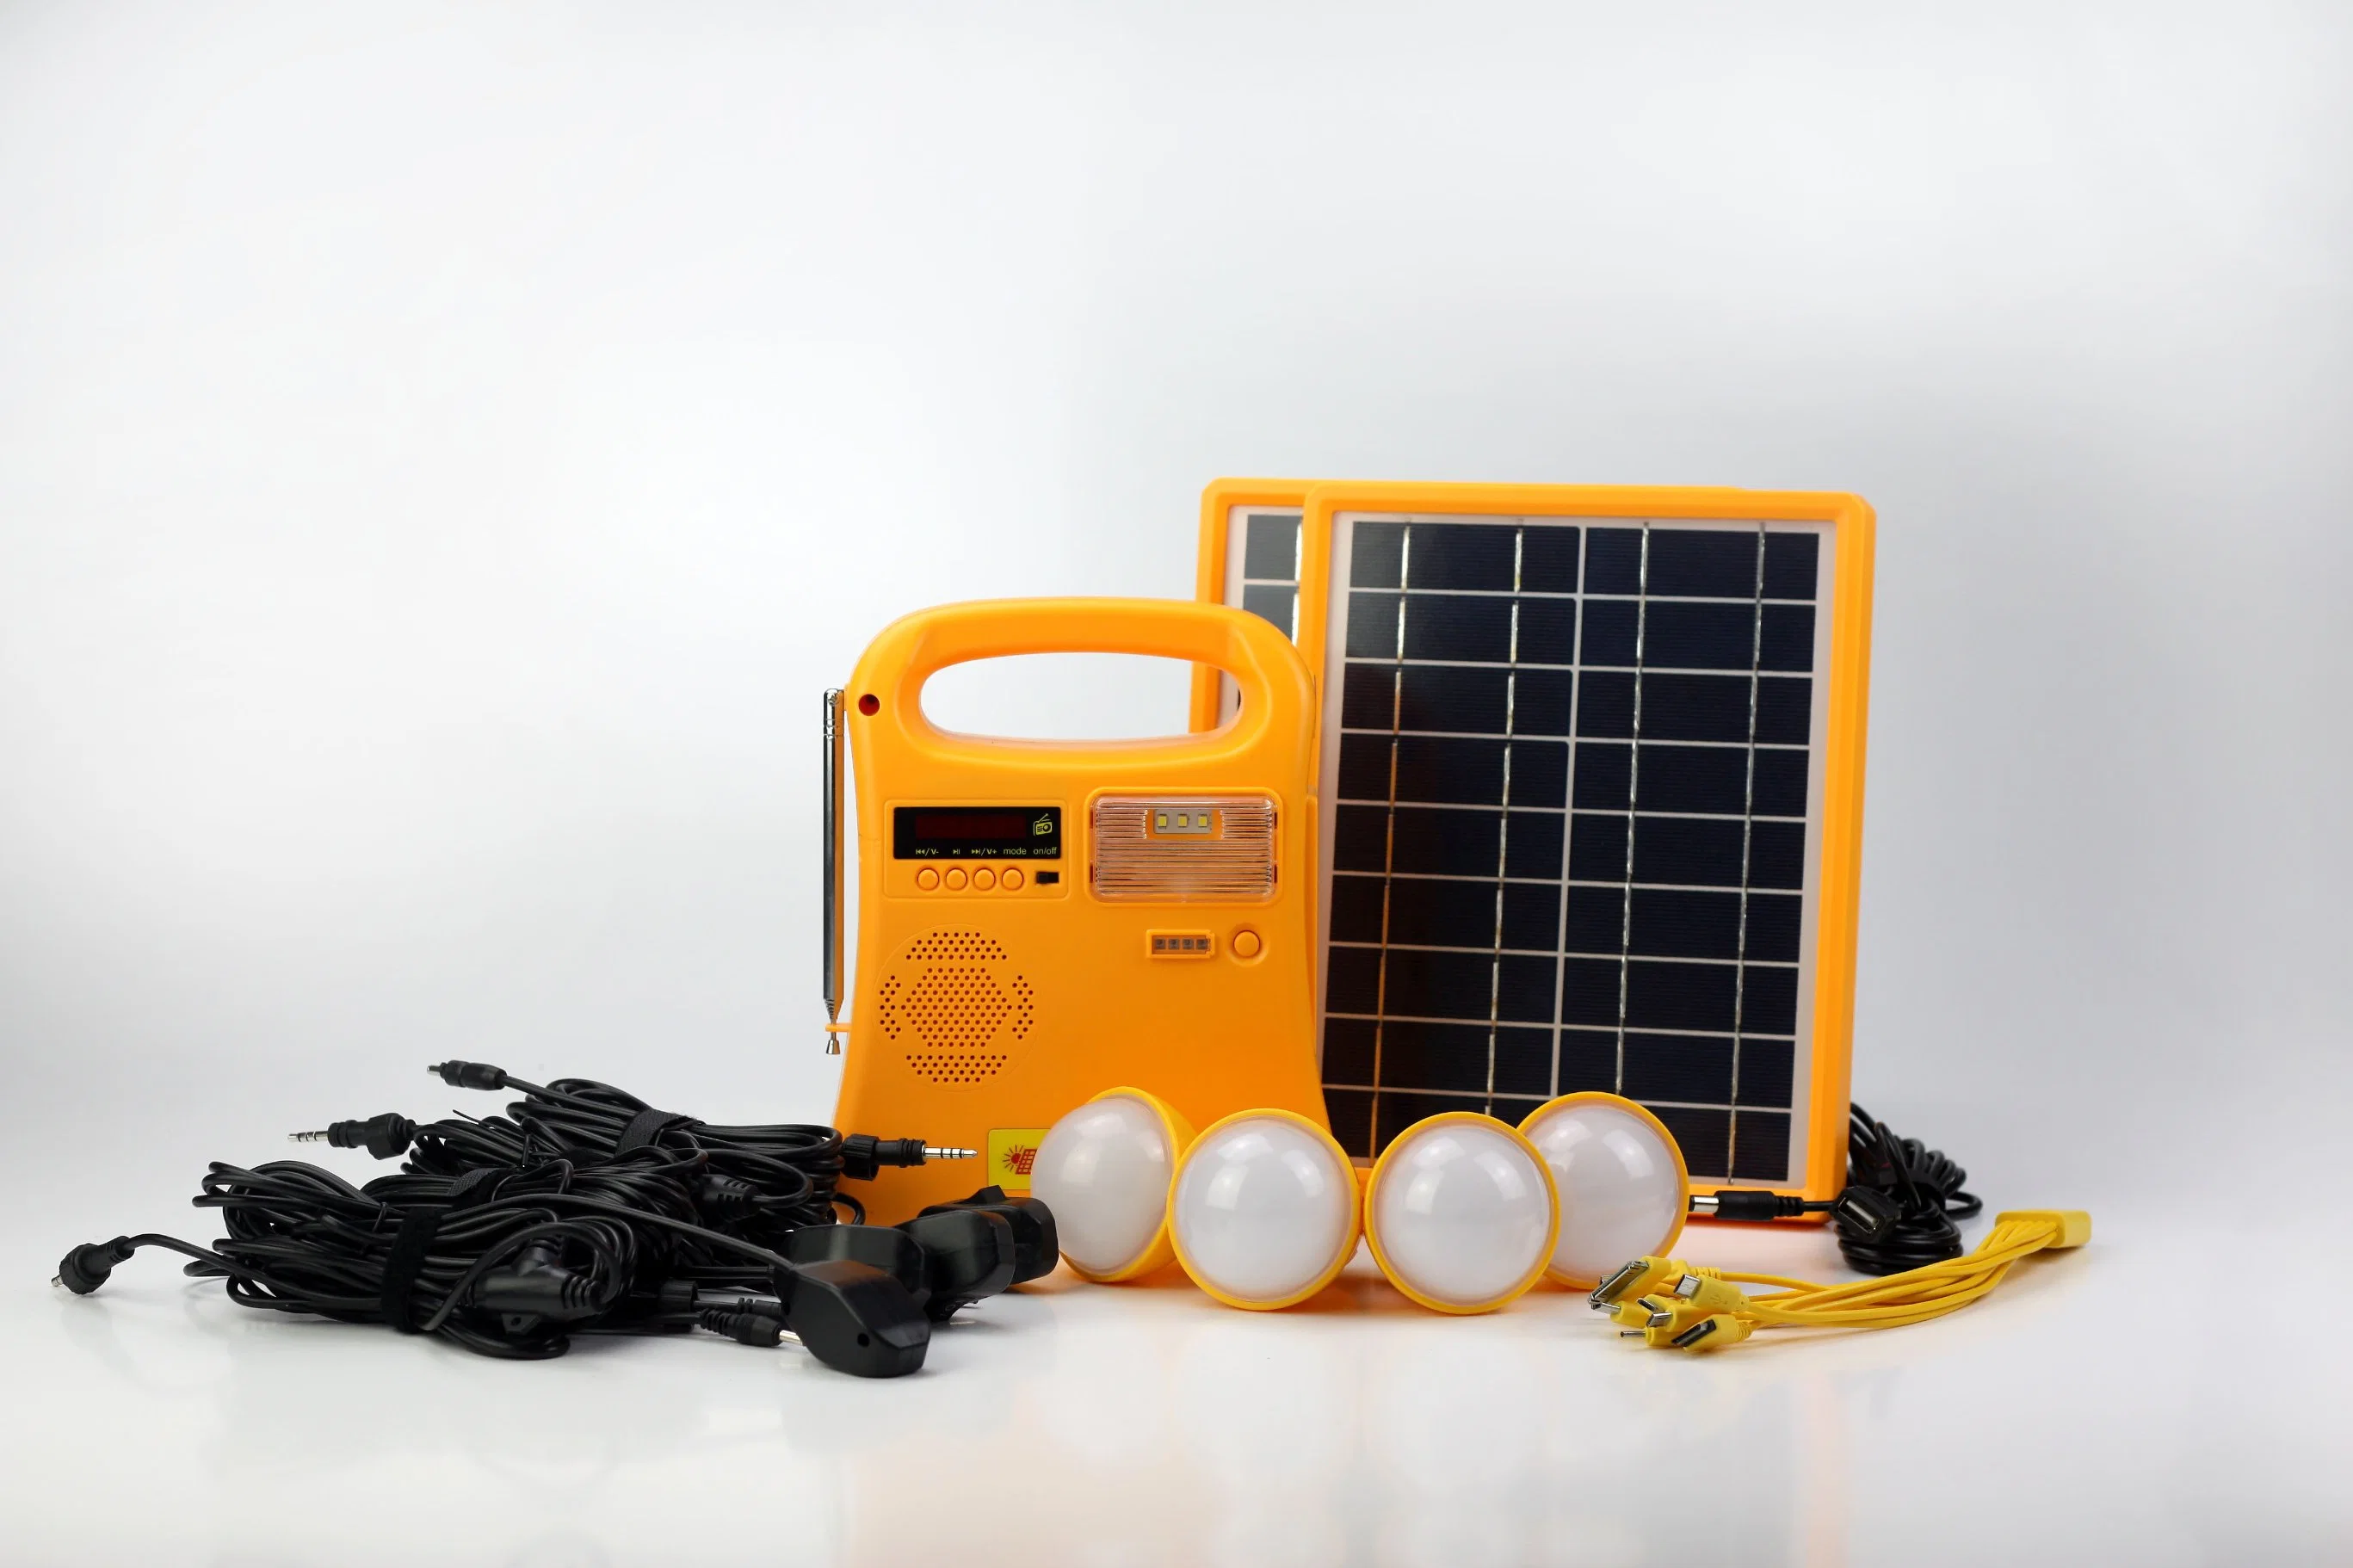 Lampe Eclairage LED pour panneau solaire Énergie solaire Énergie nouvelle Kit solaire avec radio FM/mp3 Hotsale